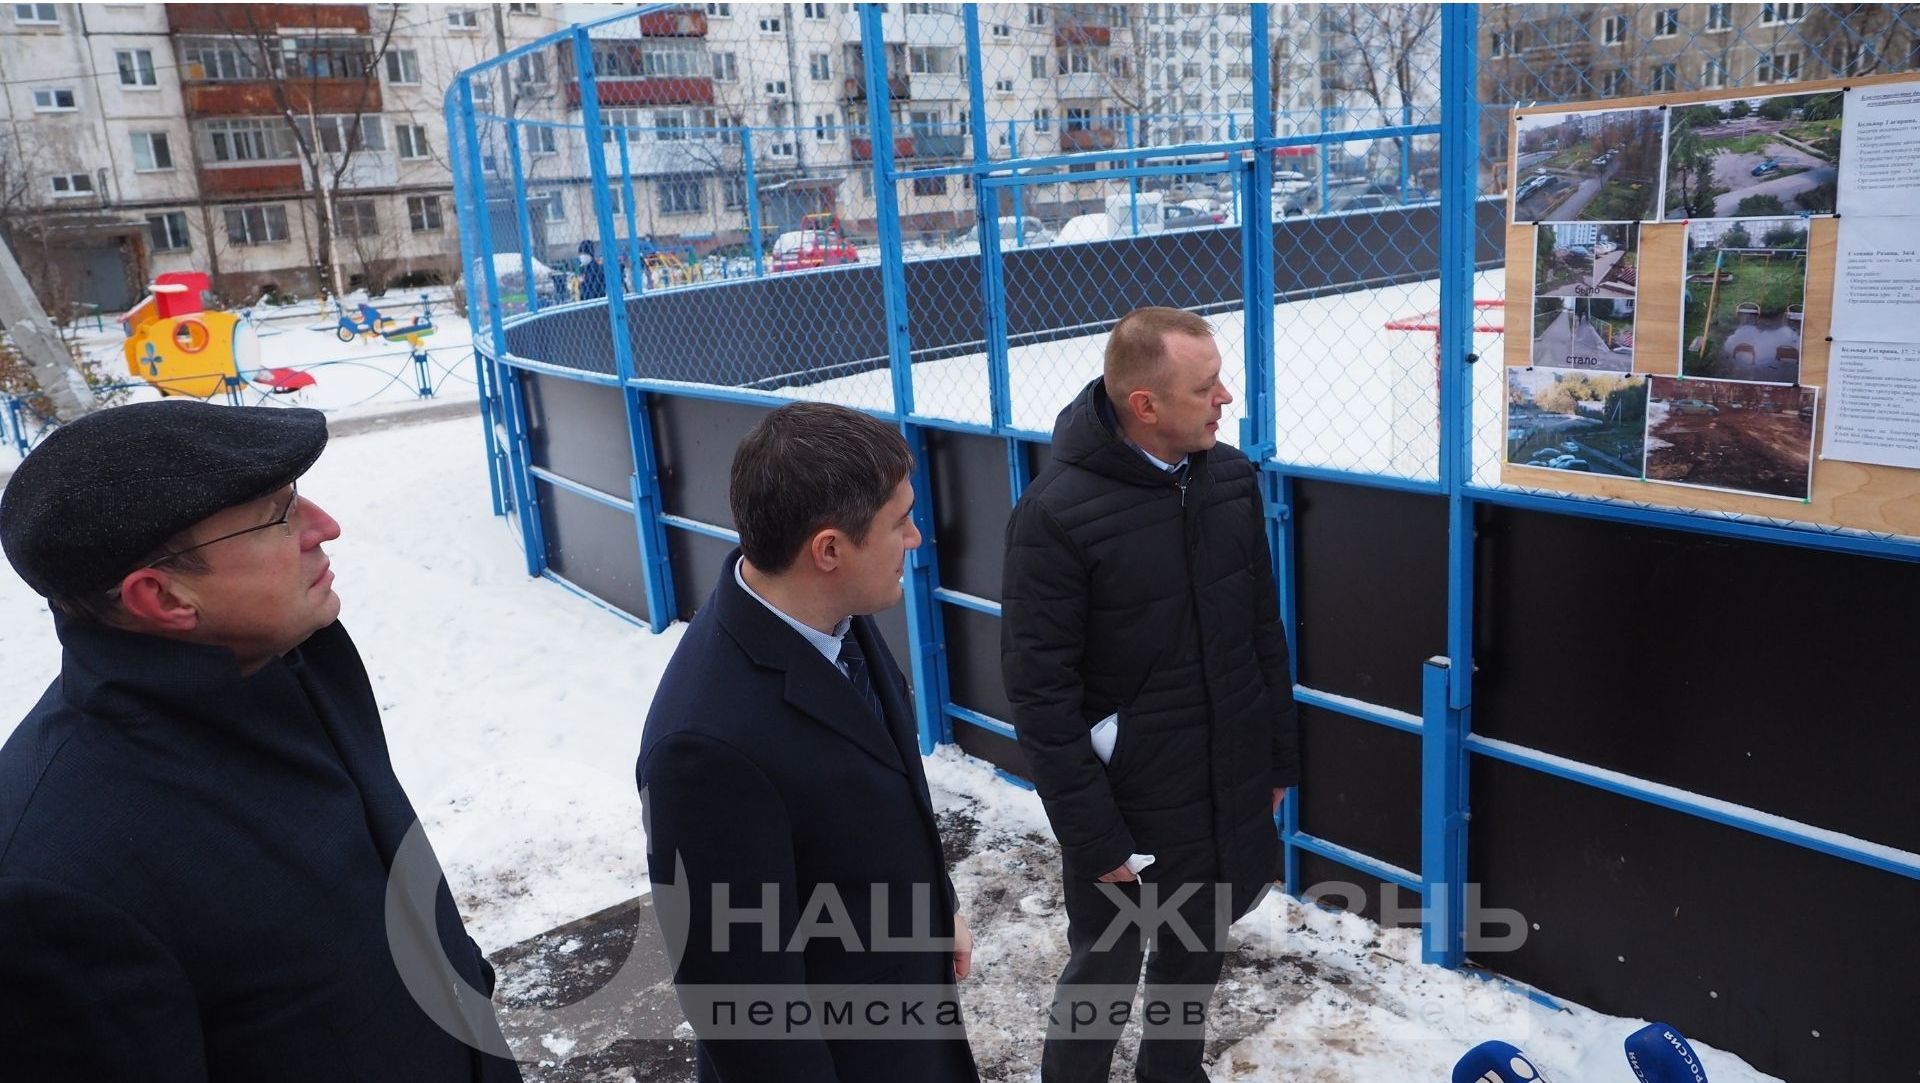 Дмитрий Махонин посетил образцовый двор Мотовилихи, благоустроенный в рамках нацпроекта